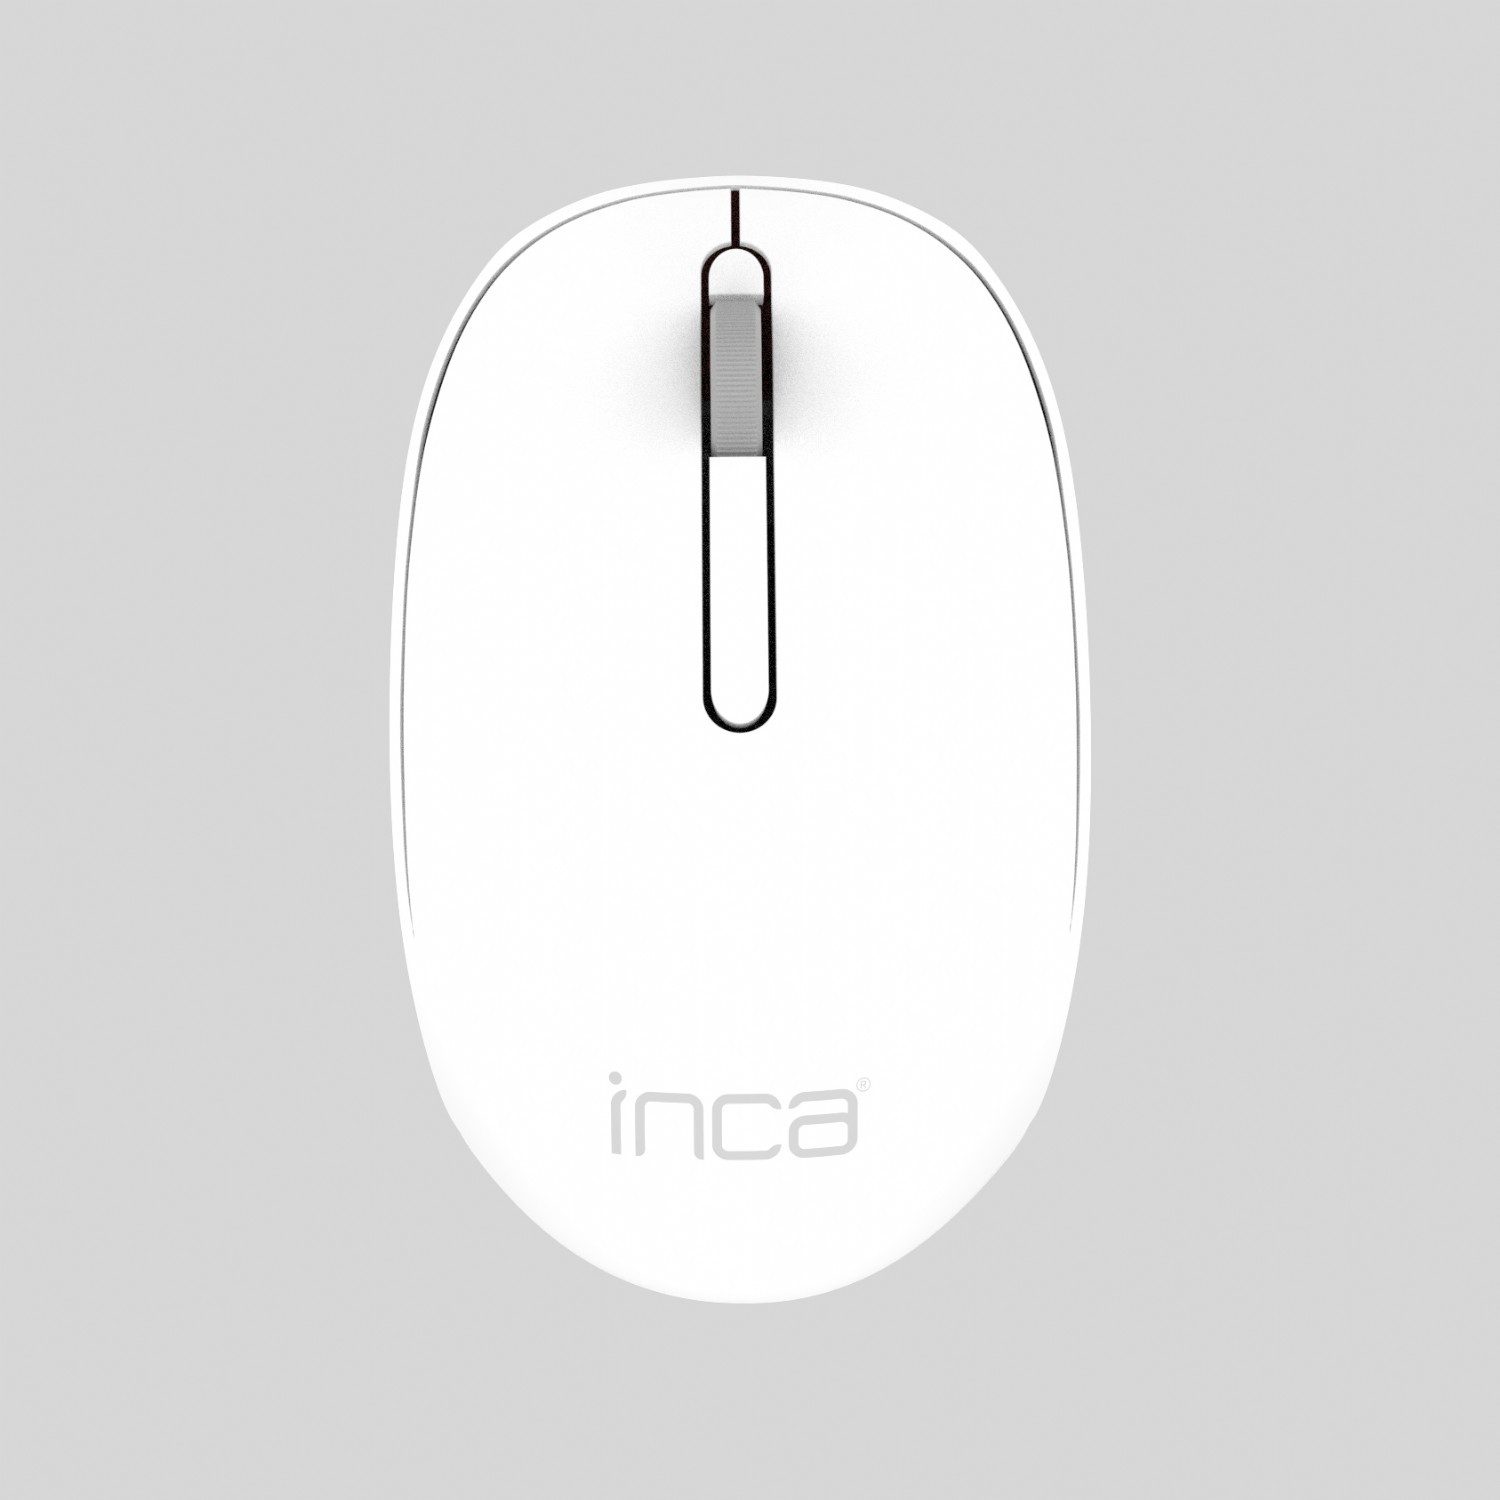 INCA Maus RF Wireless Ergonomisch 1200 DPI 2,4 GHz kabellose Maus Maus